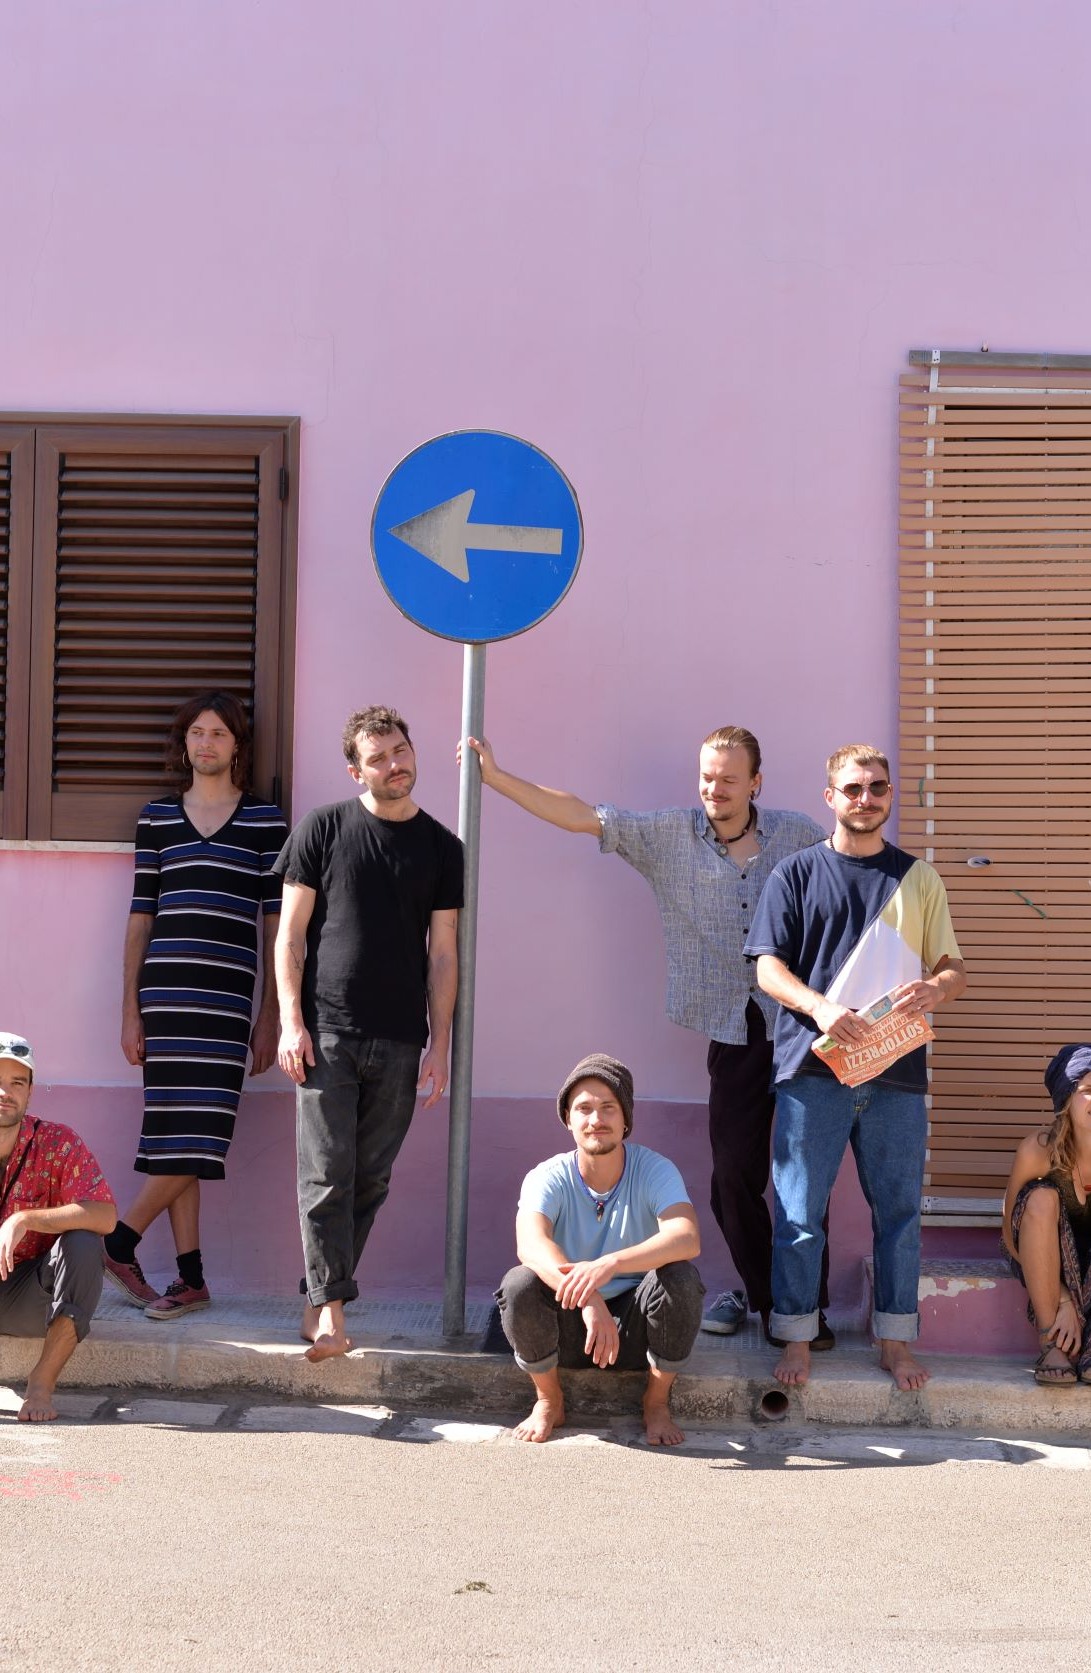 Bandmitglieder sitzen auf Bürgersteig vor einer rosa Hauswand